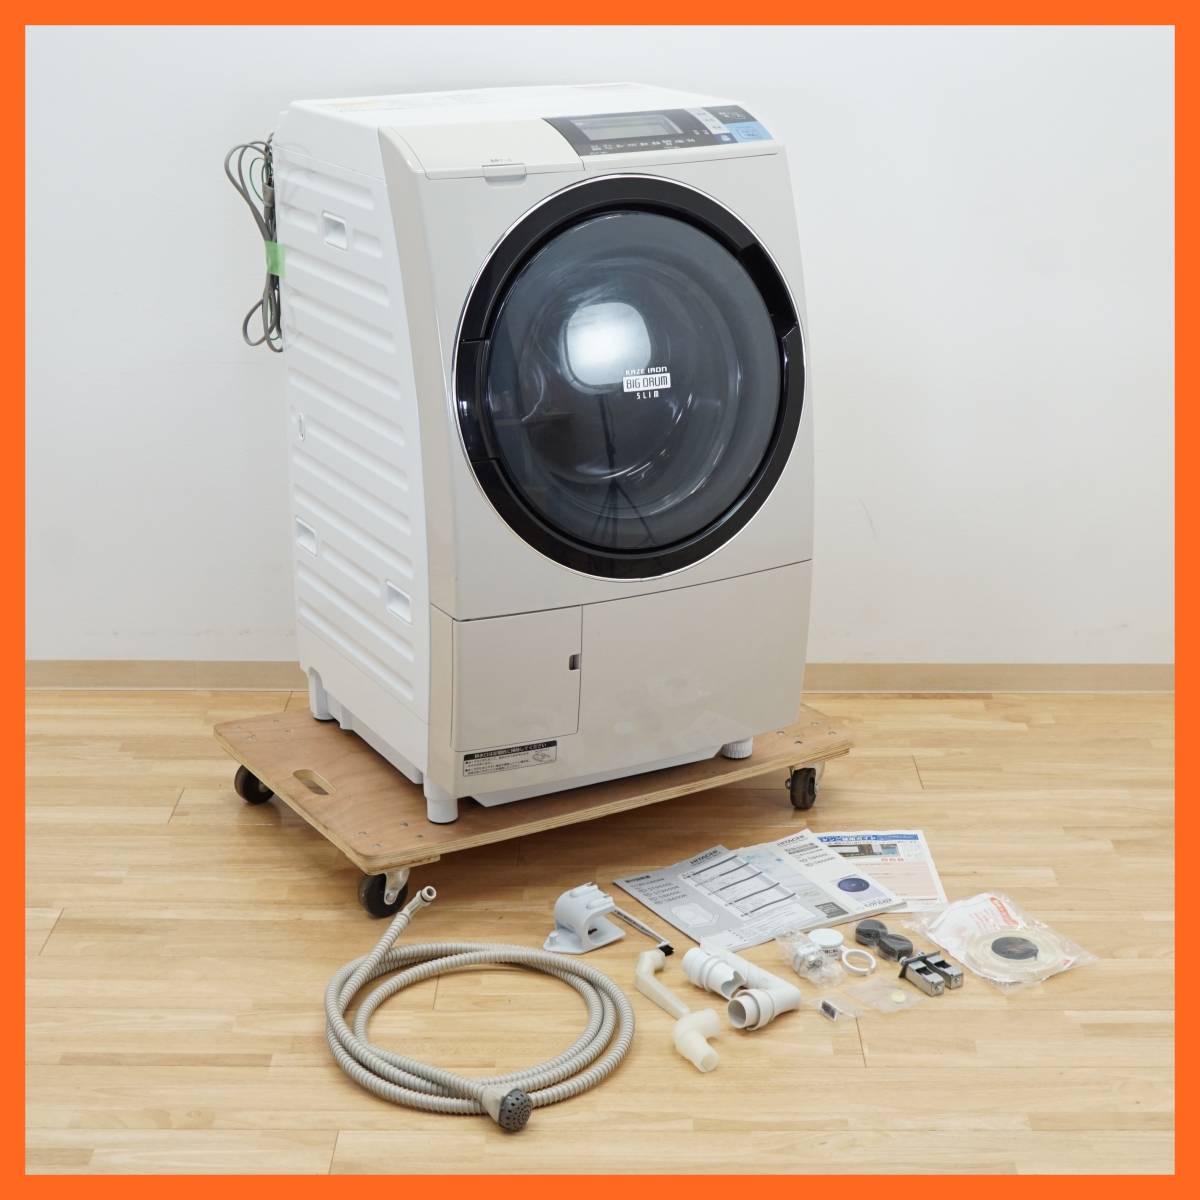 生活家電 洗濯機 日立 ドラム式洗濯乾燥機 11.0kg/6.0kg BD-S8800L 新作早割 www 